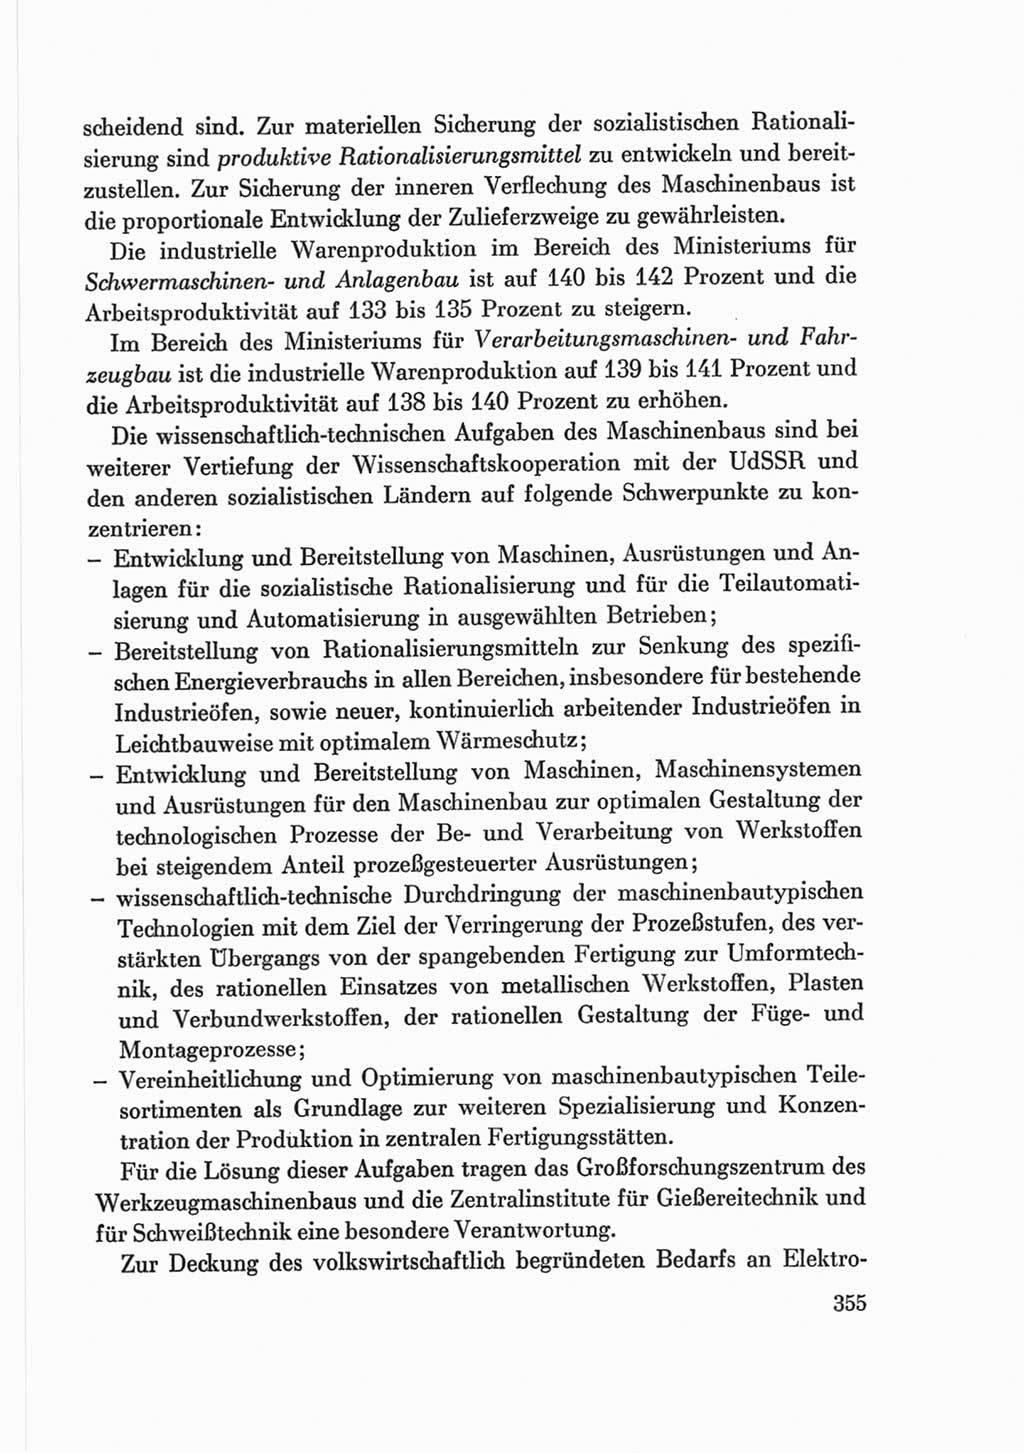 Protokoll der Verhandlungen des Ⅷ. Parteitages der Sozialistischen Einheitspartei Deutschlands (SED) [Deutsche Demokratische Republik (DDR)] 1971, Band 2, Seite 355 (Prot. Verh. Ⅷ. PT SED DDR 1971, Bd. 2, S. 355)